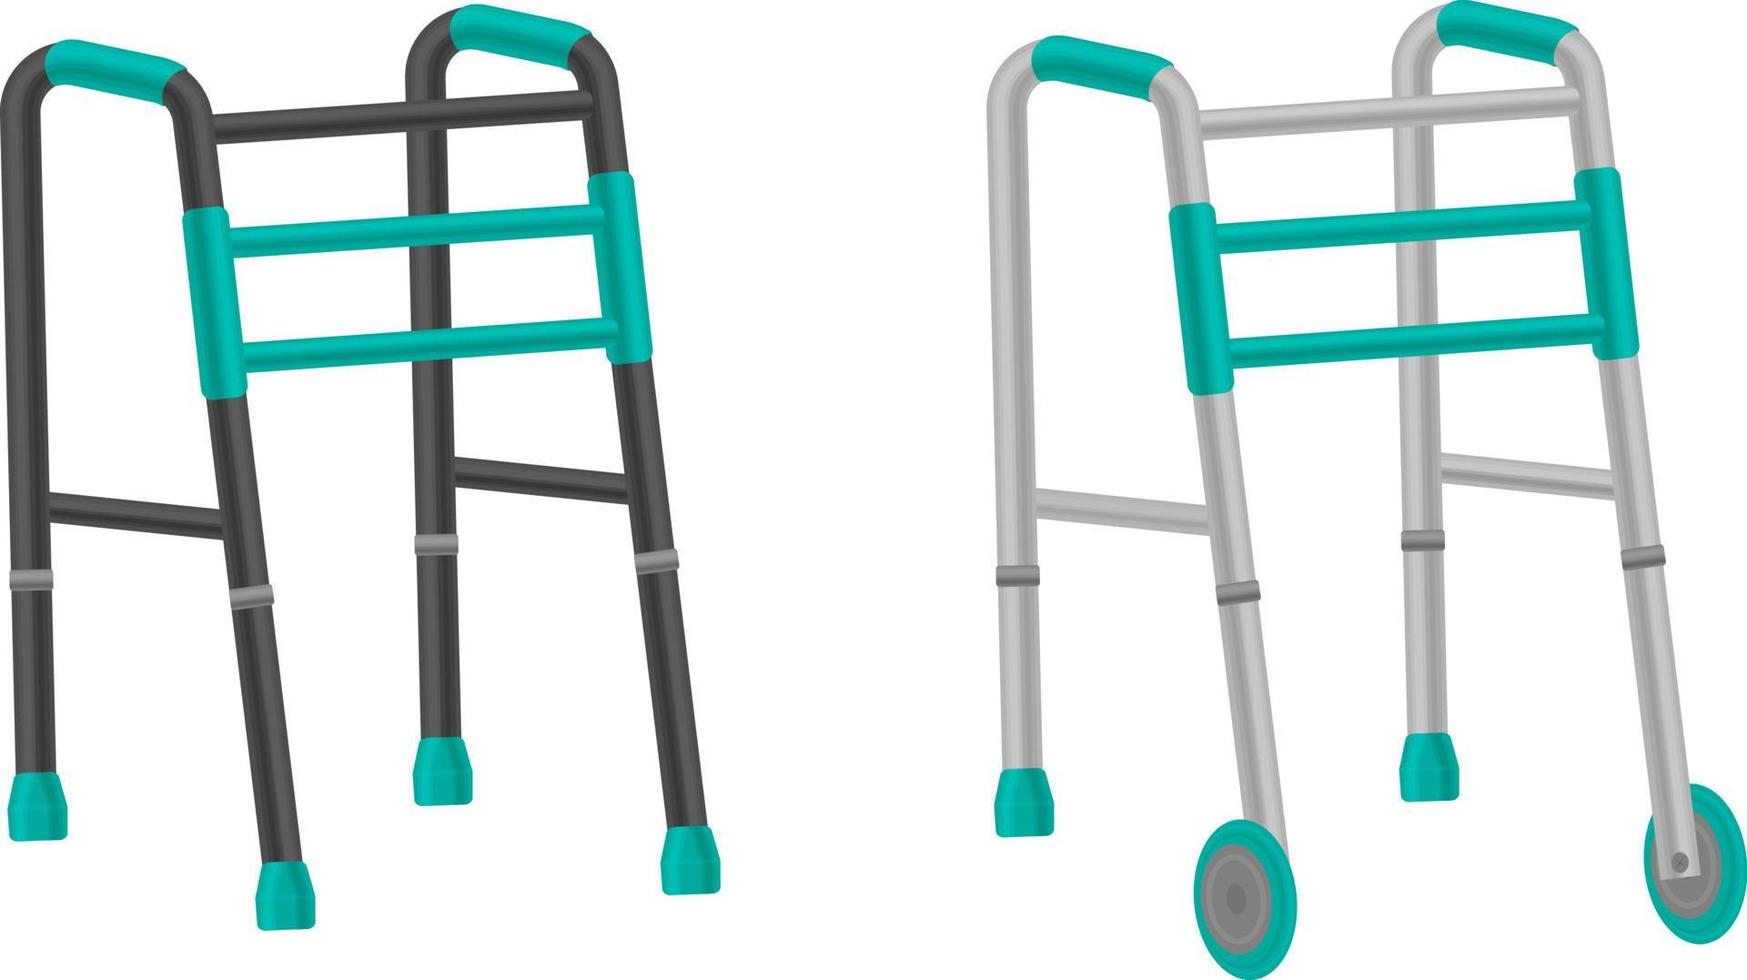 ensemble vectoriel de déambulateurs pour personnes âgées. un déambulateur pour personnes âgées, qui aide les personnes handicapées à se déplacer. l'illustration est isolée sur fond blanc